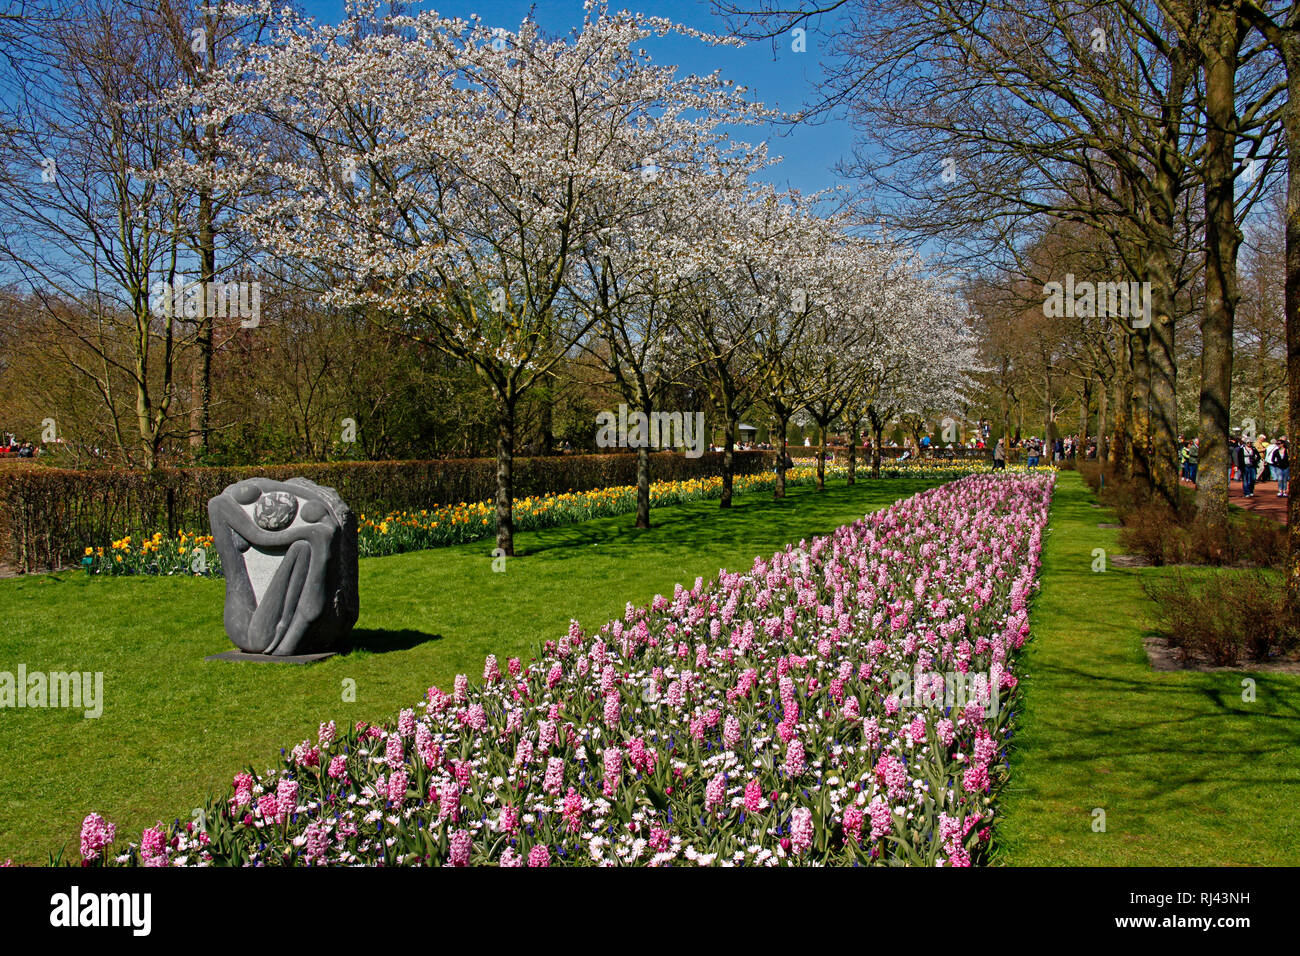 Niederlande, Lisse, Keukenhof, Blumenbeete Tulpen und Narzissen, Stock Photo